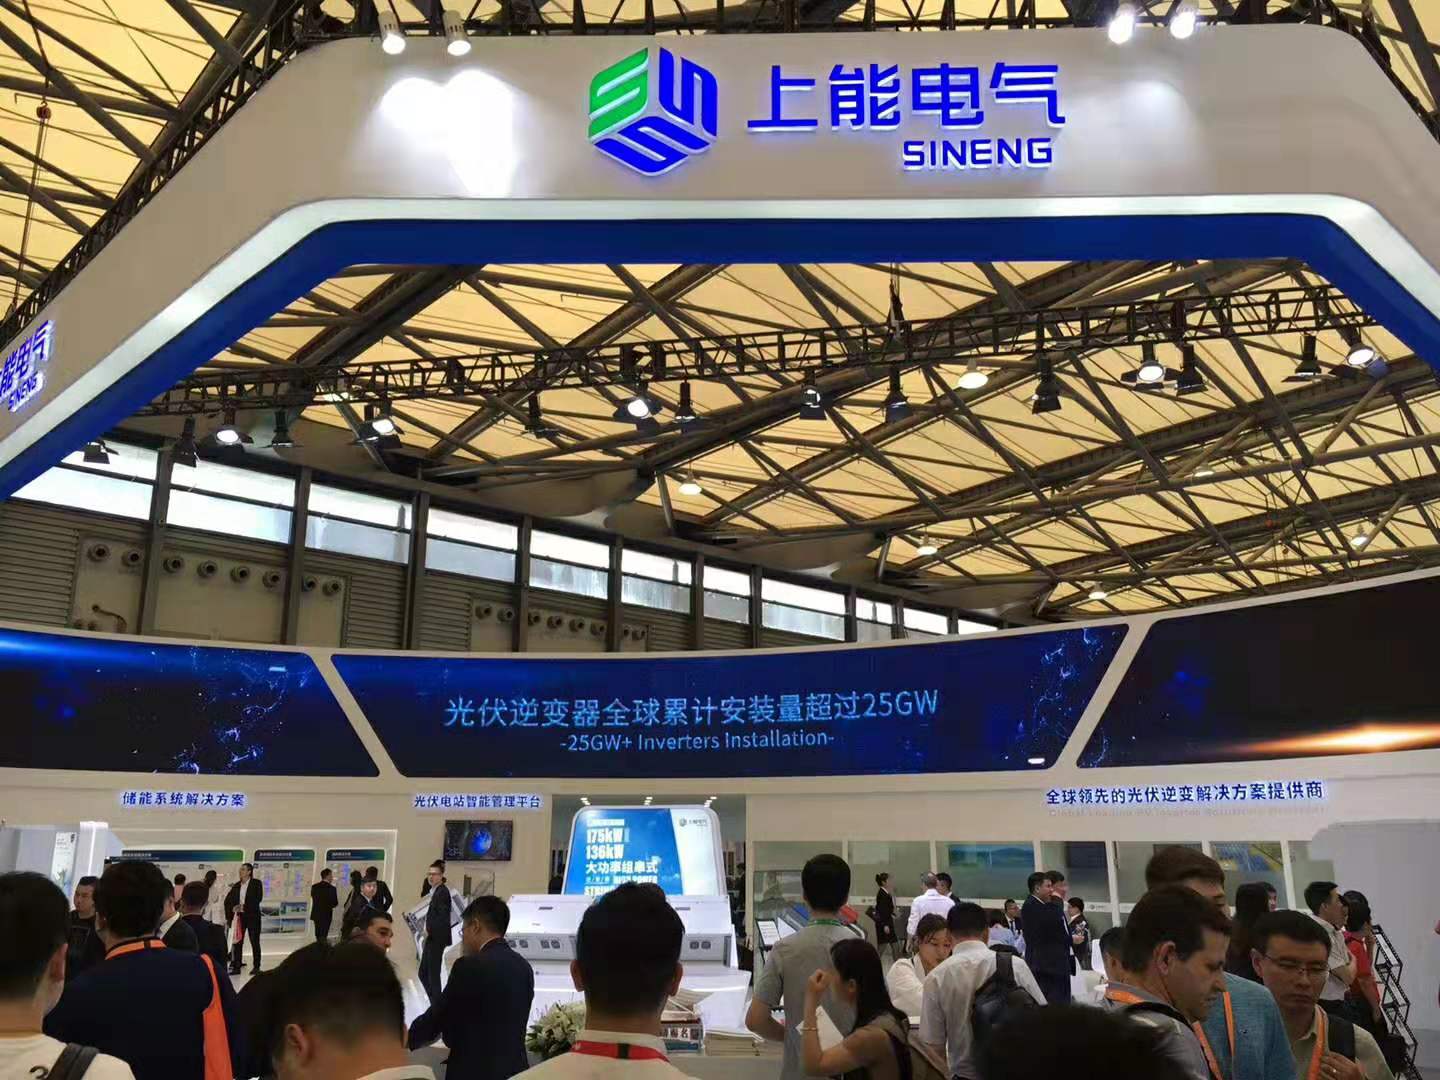 2020上海SNEC太阳能光伏展览会